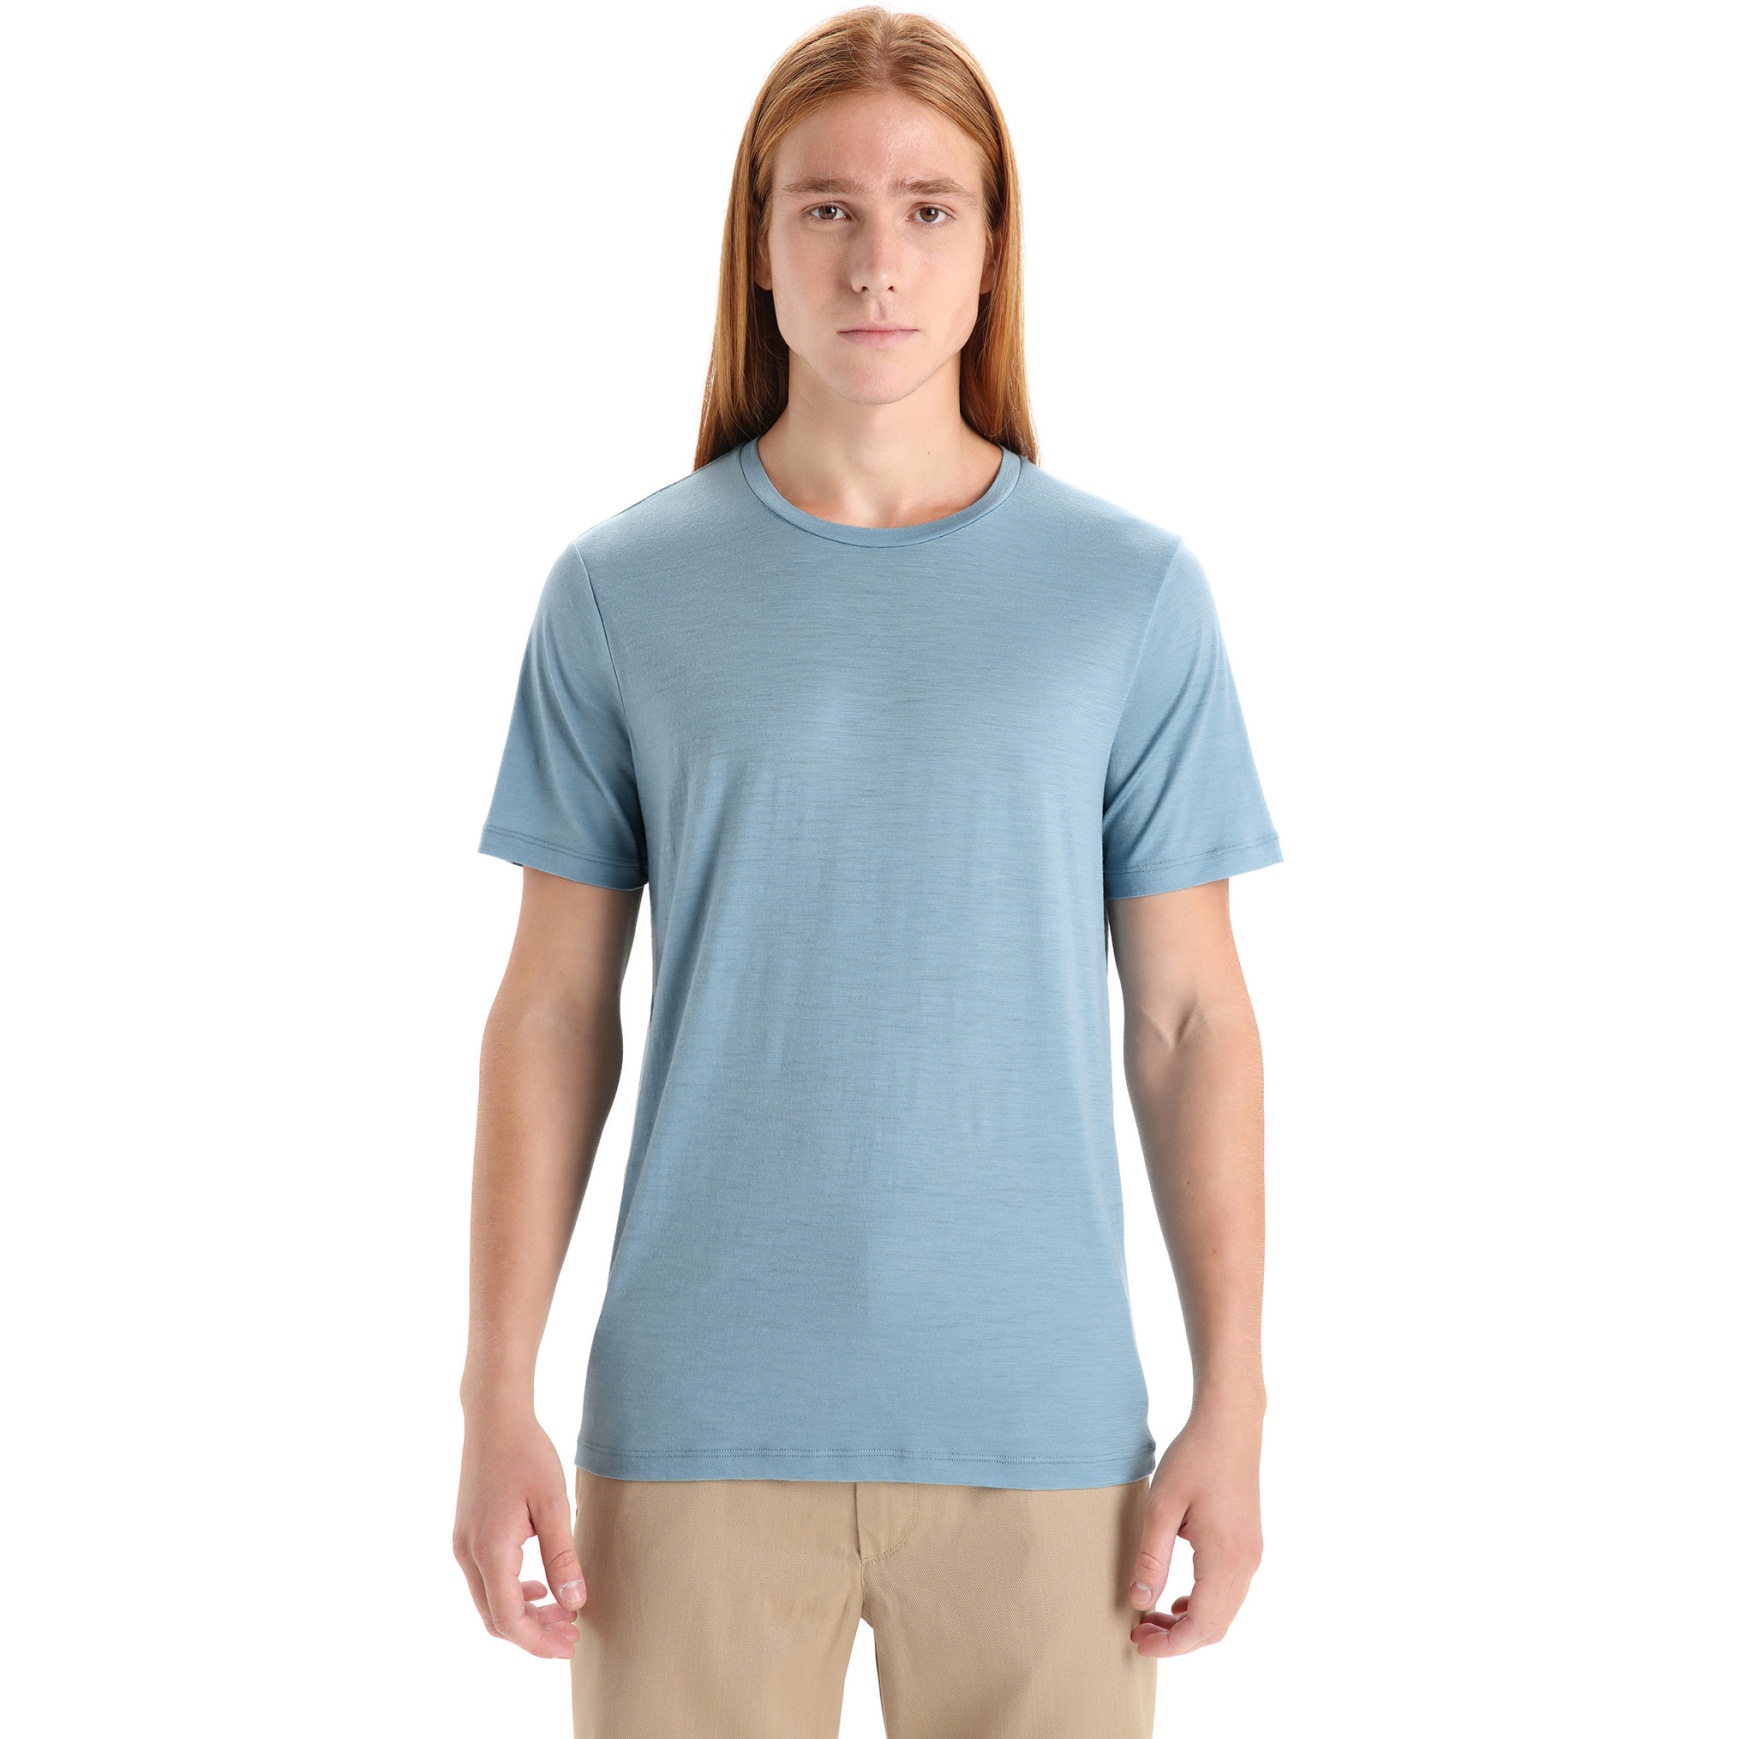 Produktbild von Icebreaker Tech Lite II Herren T-Shirt - Astral Blue